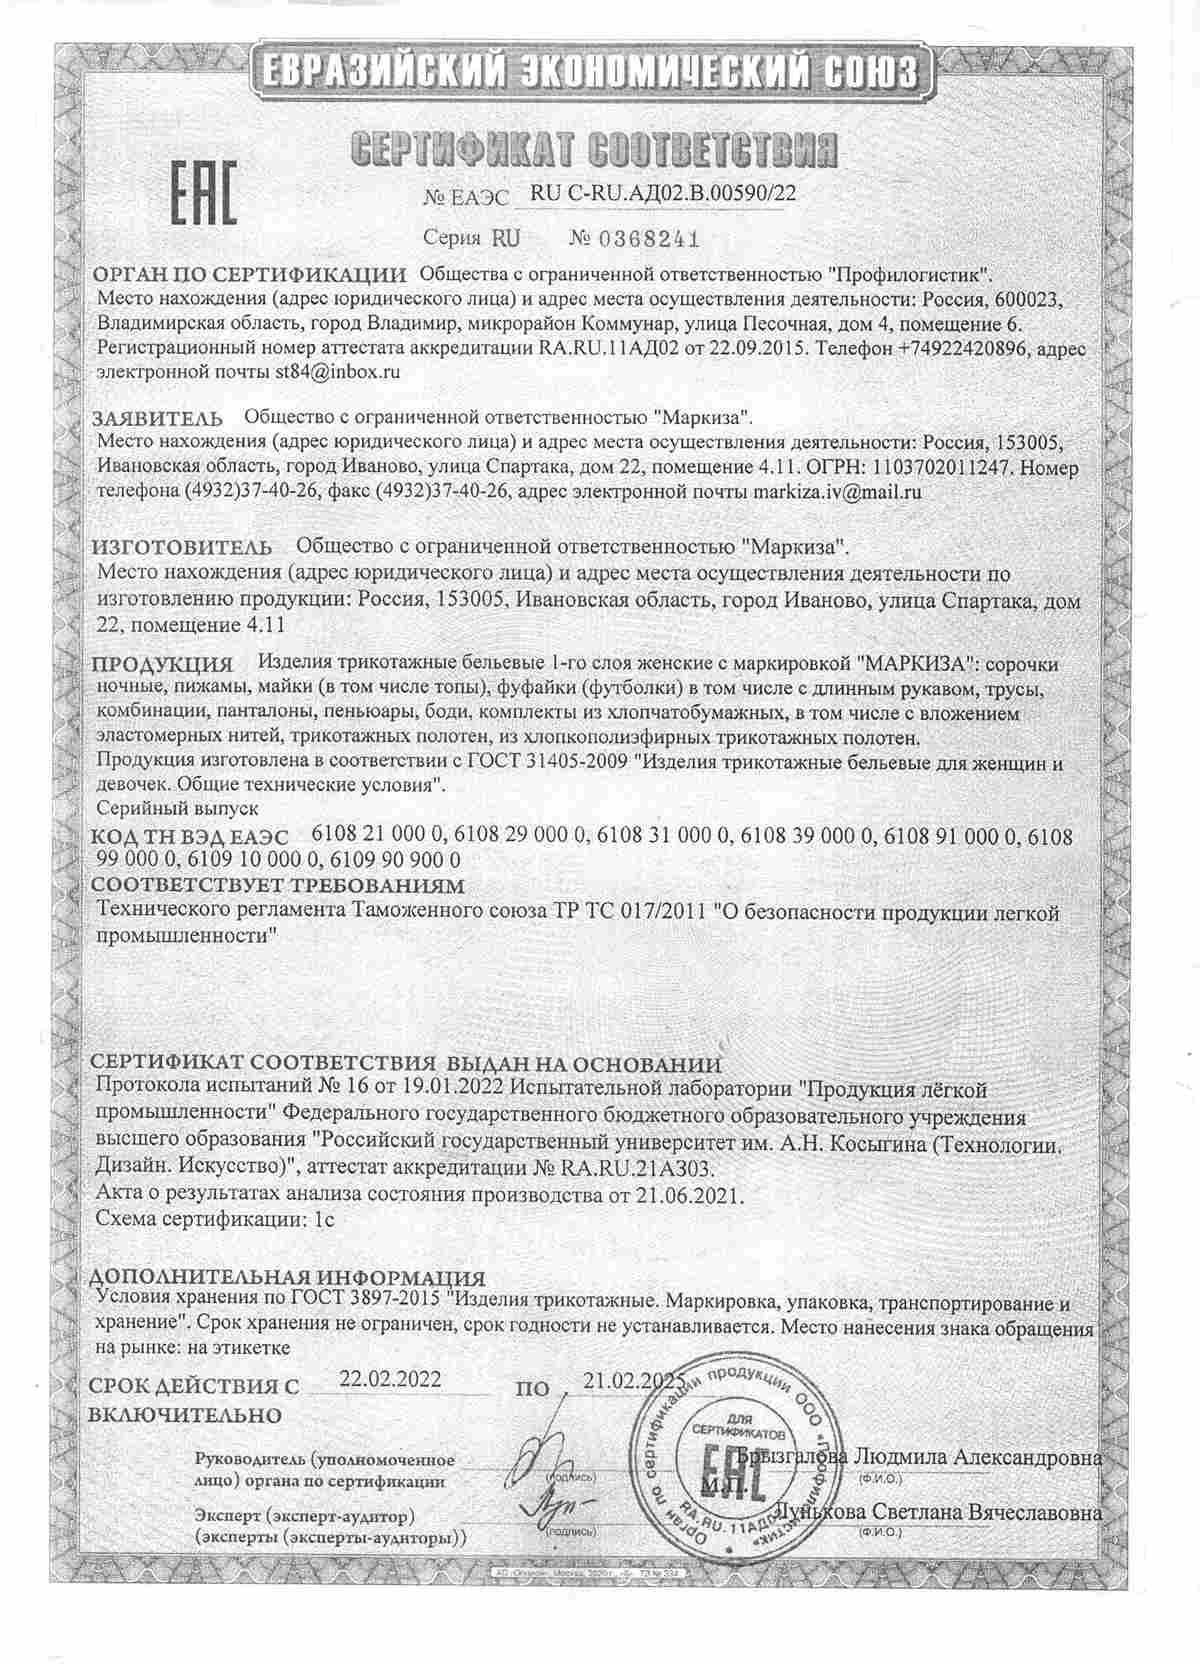 ООО Маркиза сертификат соответствия